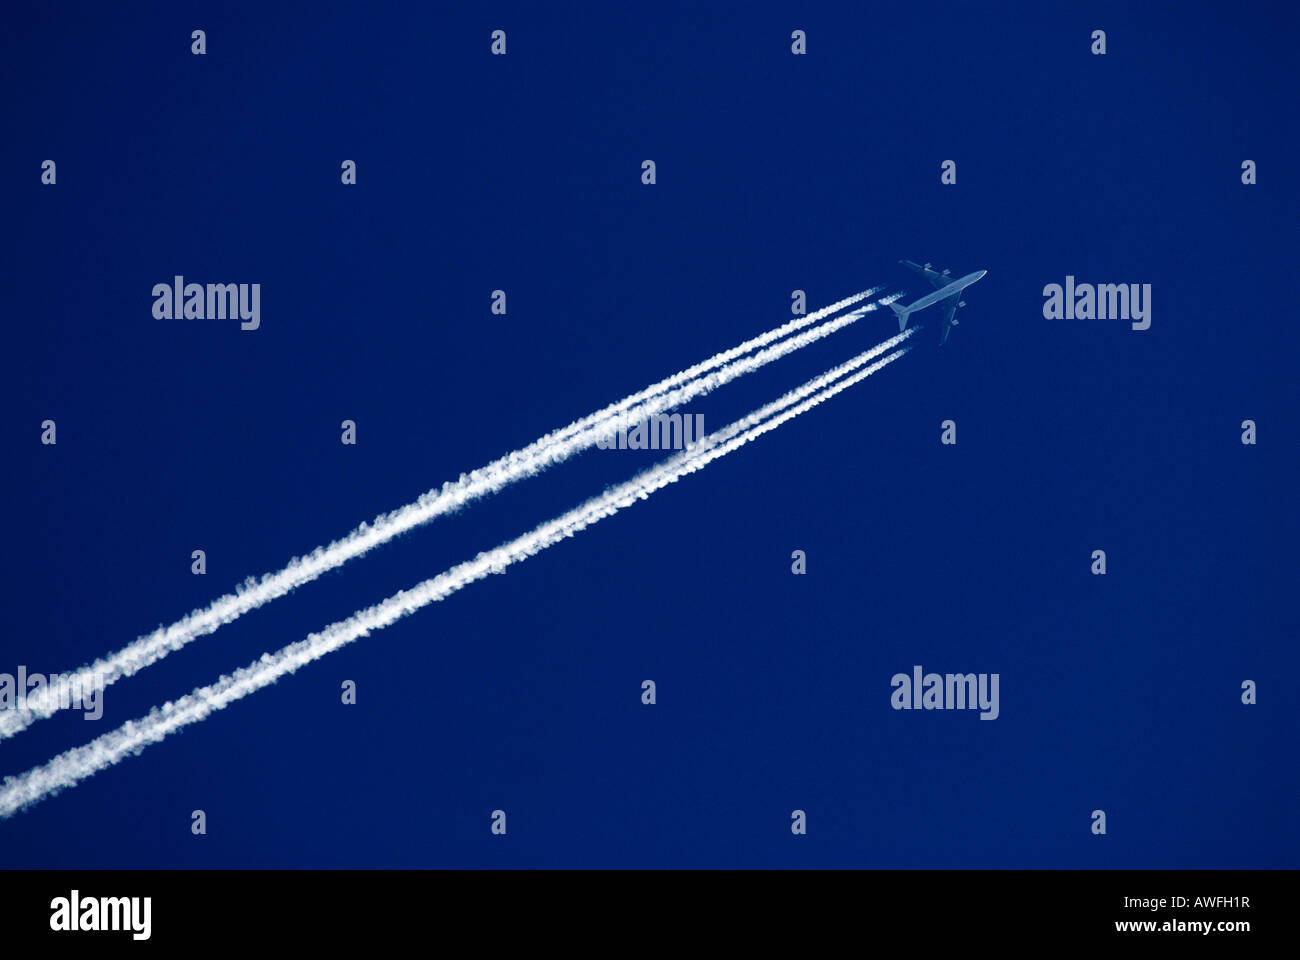 Avion dans un ciel bleu, les traînées d'échappement (trail, traînée de vapeur) Banque D'Images